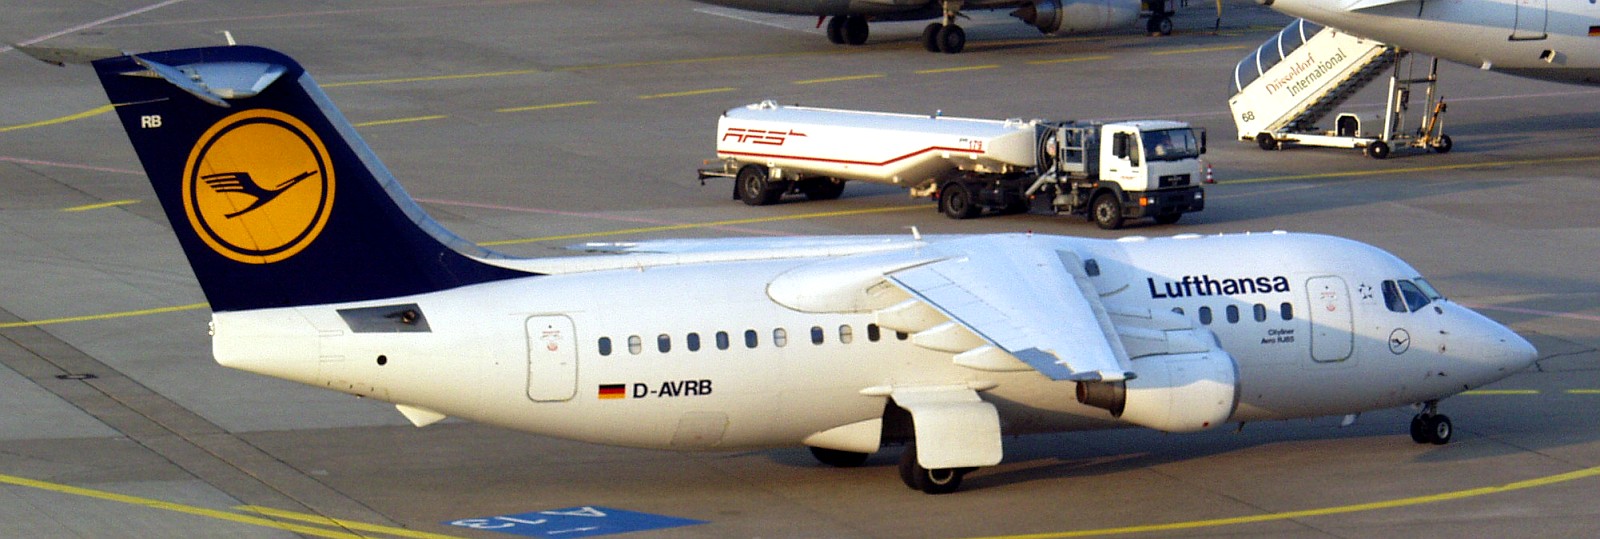 Lufthansa_-_Avro_RJ85_%28D-AVRB%29.jpg